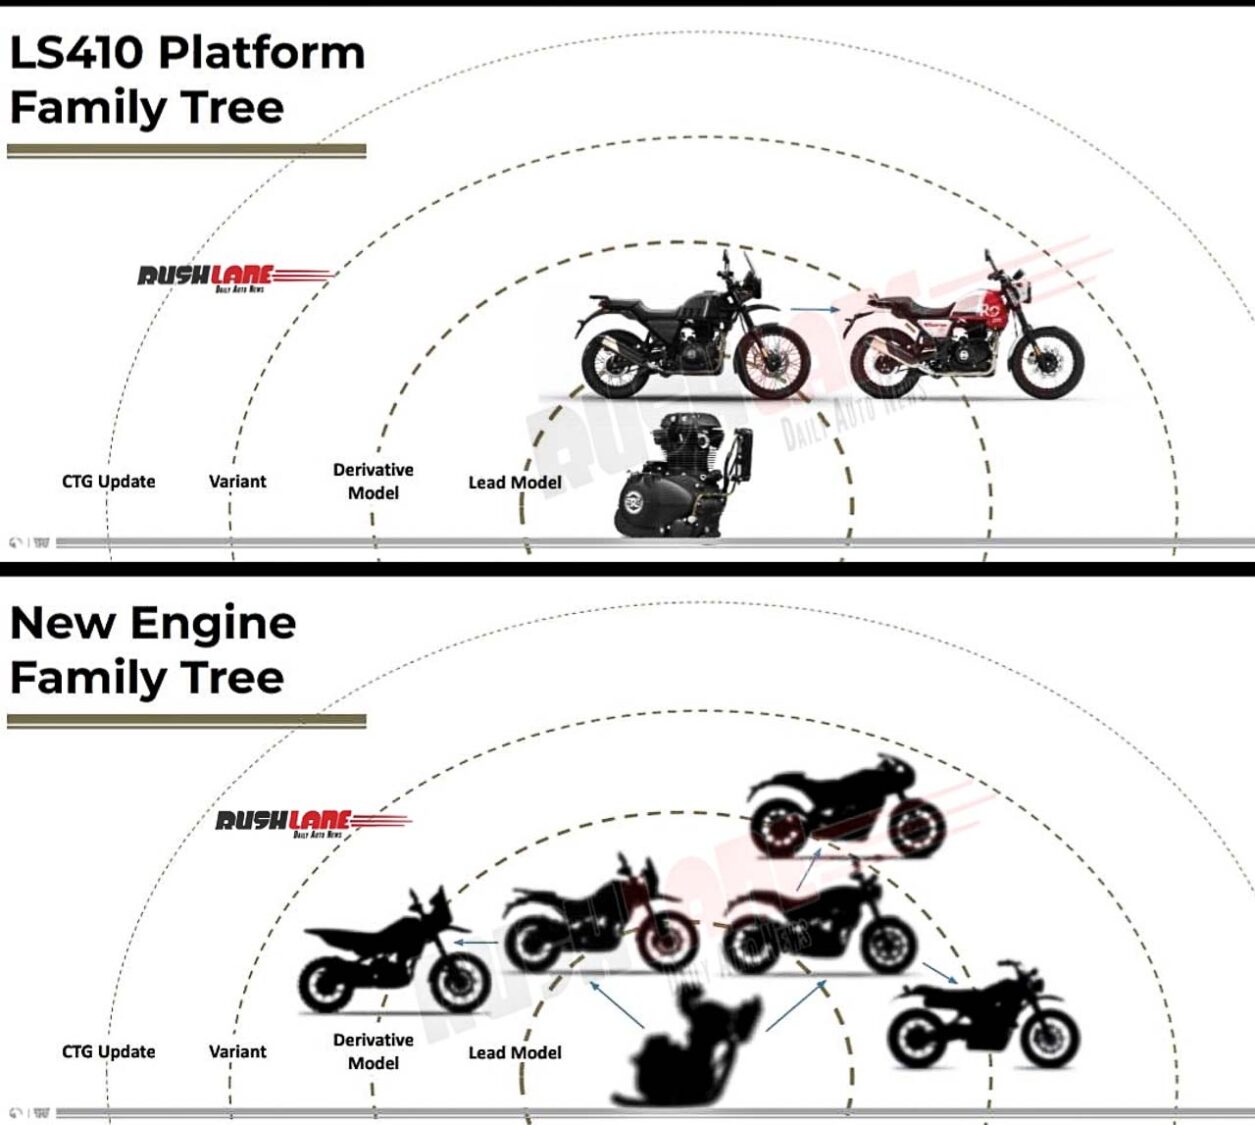 Upcoming Royal Enfield 350cc, 450cc, 650cc Motorcycles